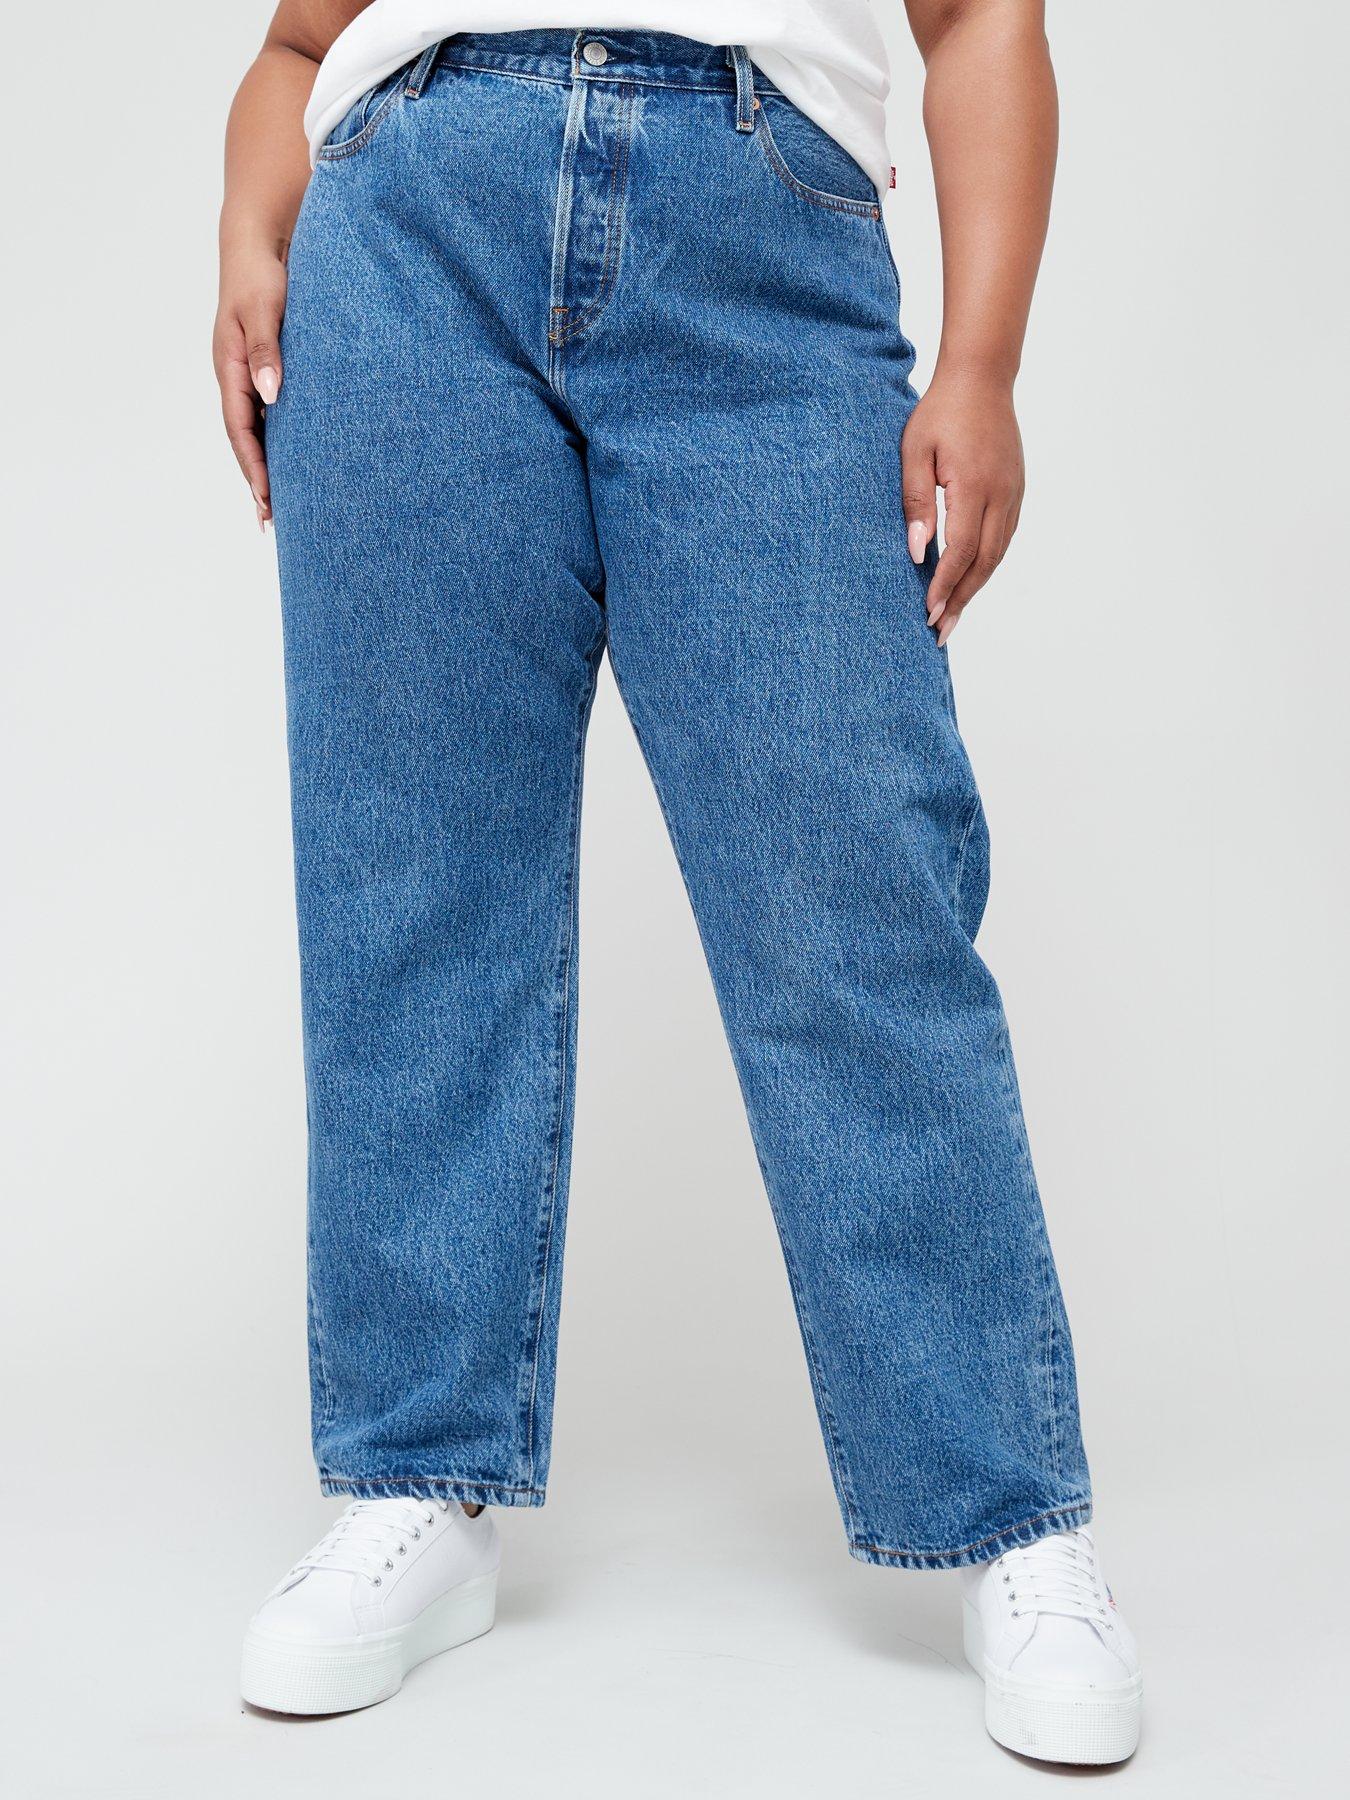 Levi's Plus Plus 501® Jeans For Women - Shout Out Stone 